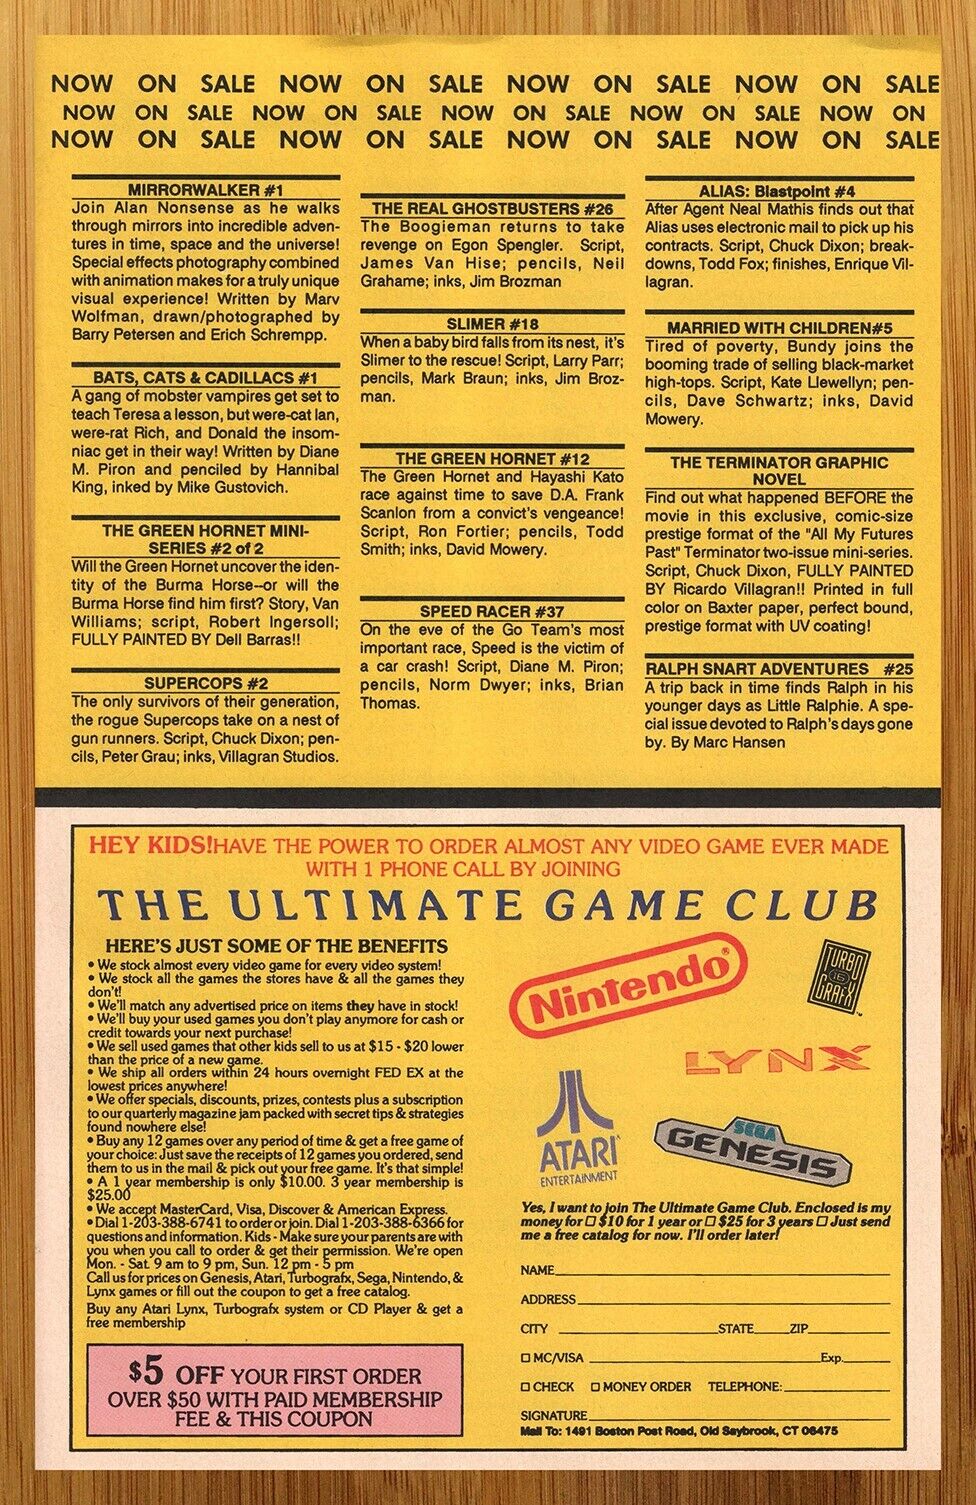 1990 The Ultimate Game Club Print Ad/Poster Nintendo Sega Genesis Atari Lynx Art